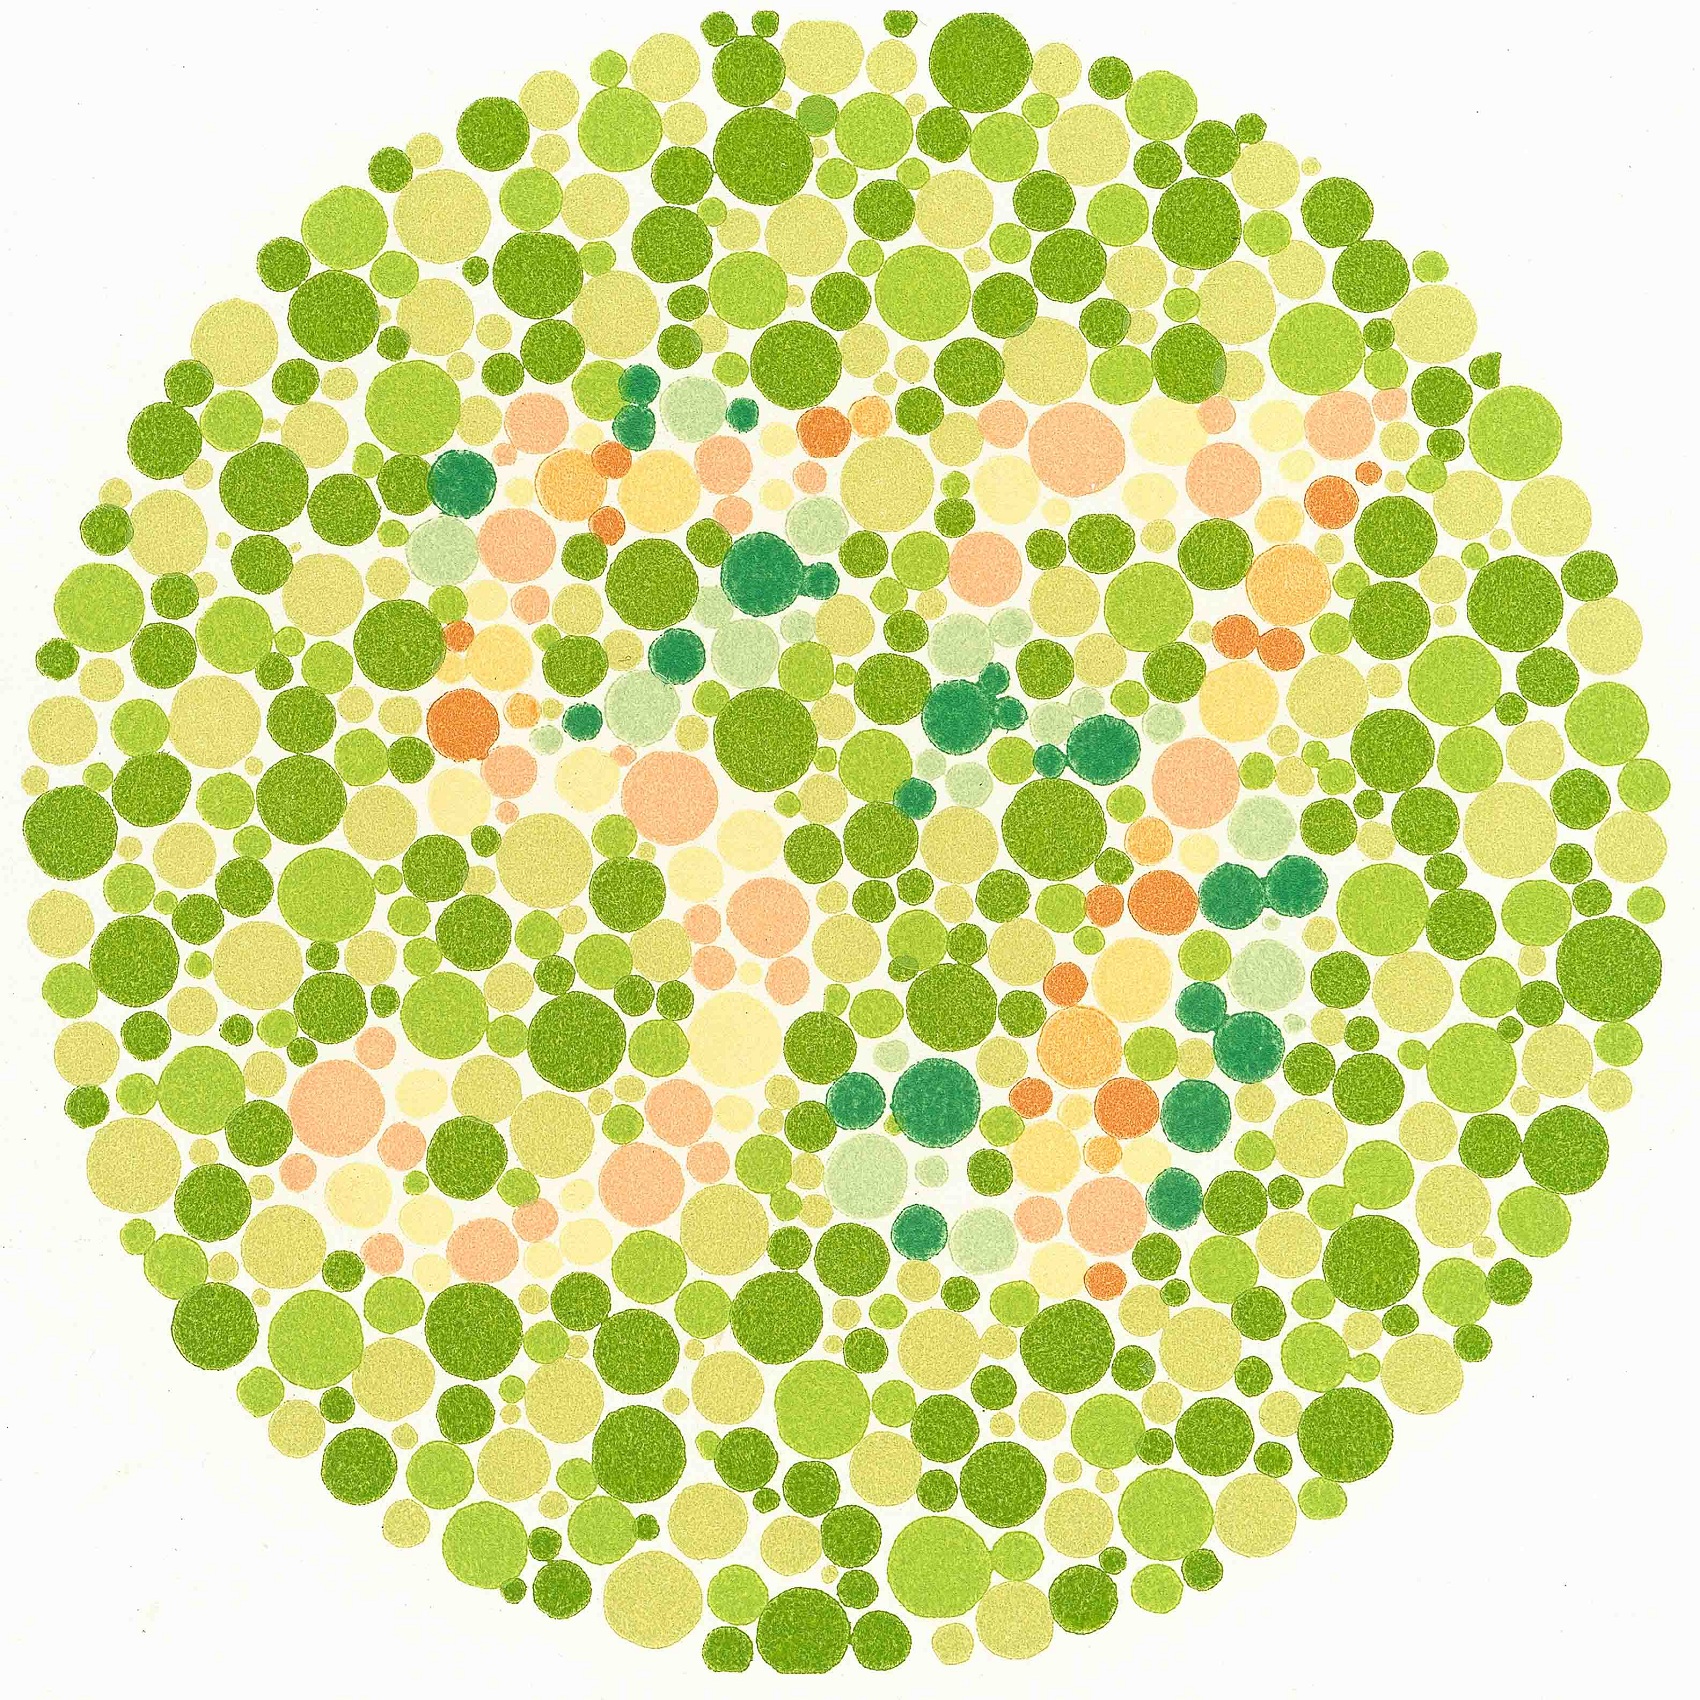 kindergarten color blind test for kids